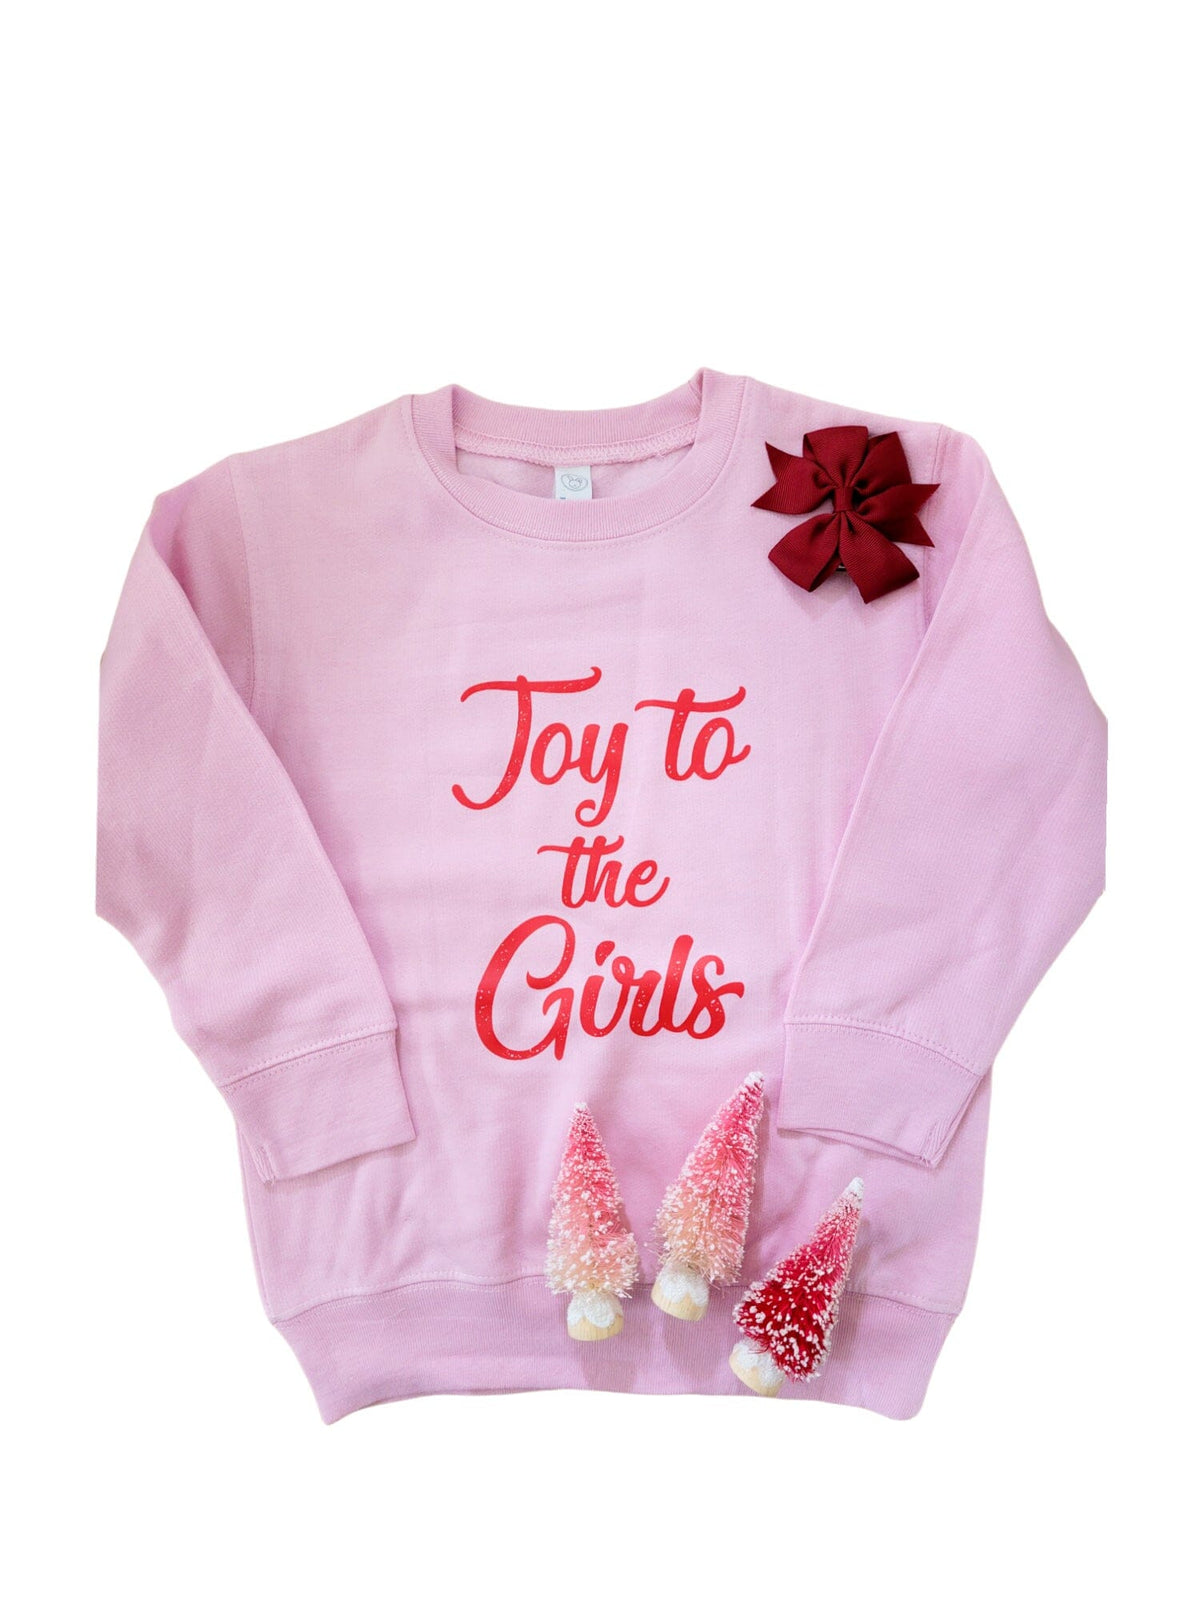 Joy to the Girls Toddler Sweatshirt